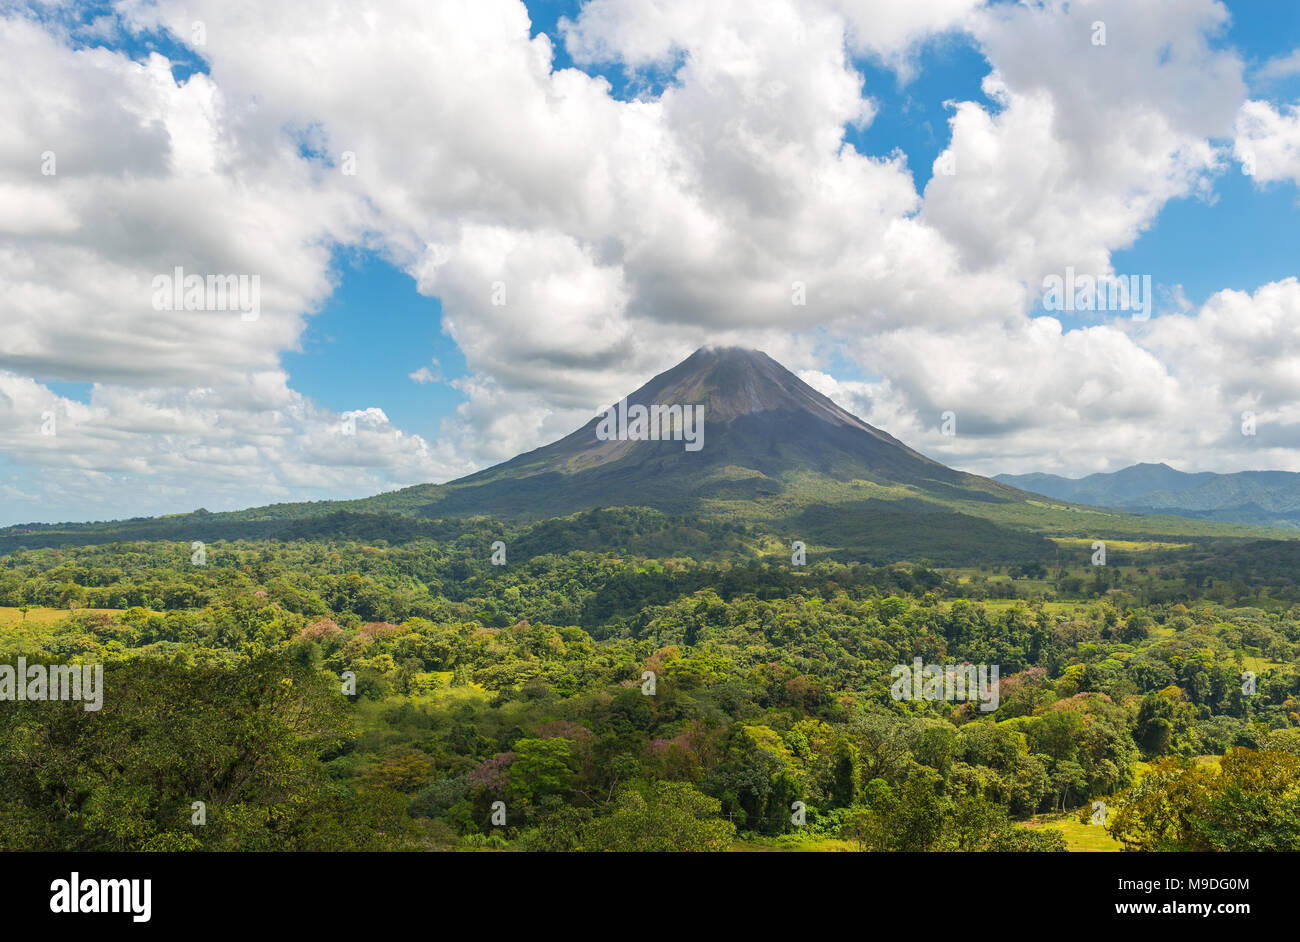 Paysage de la forêt tropicale et sa verrière de l'Arenal Volcano active un jour d'été près de La Fortuna, Costa Rica, Amérique centrale. Banque D'Images